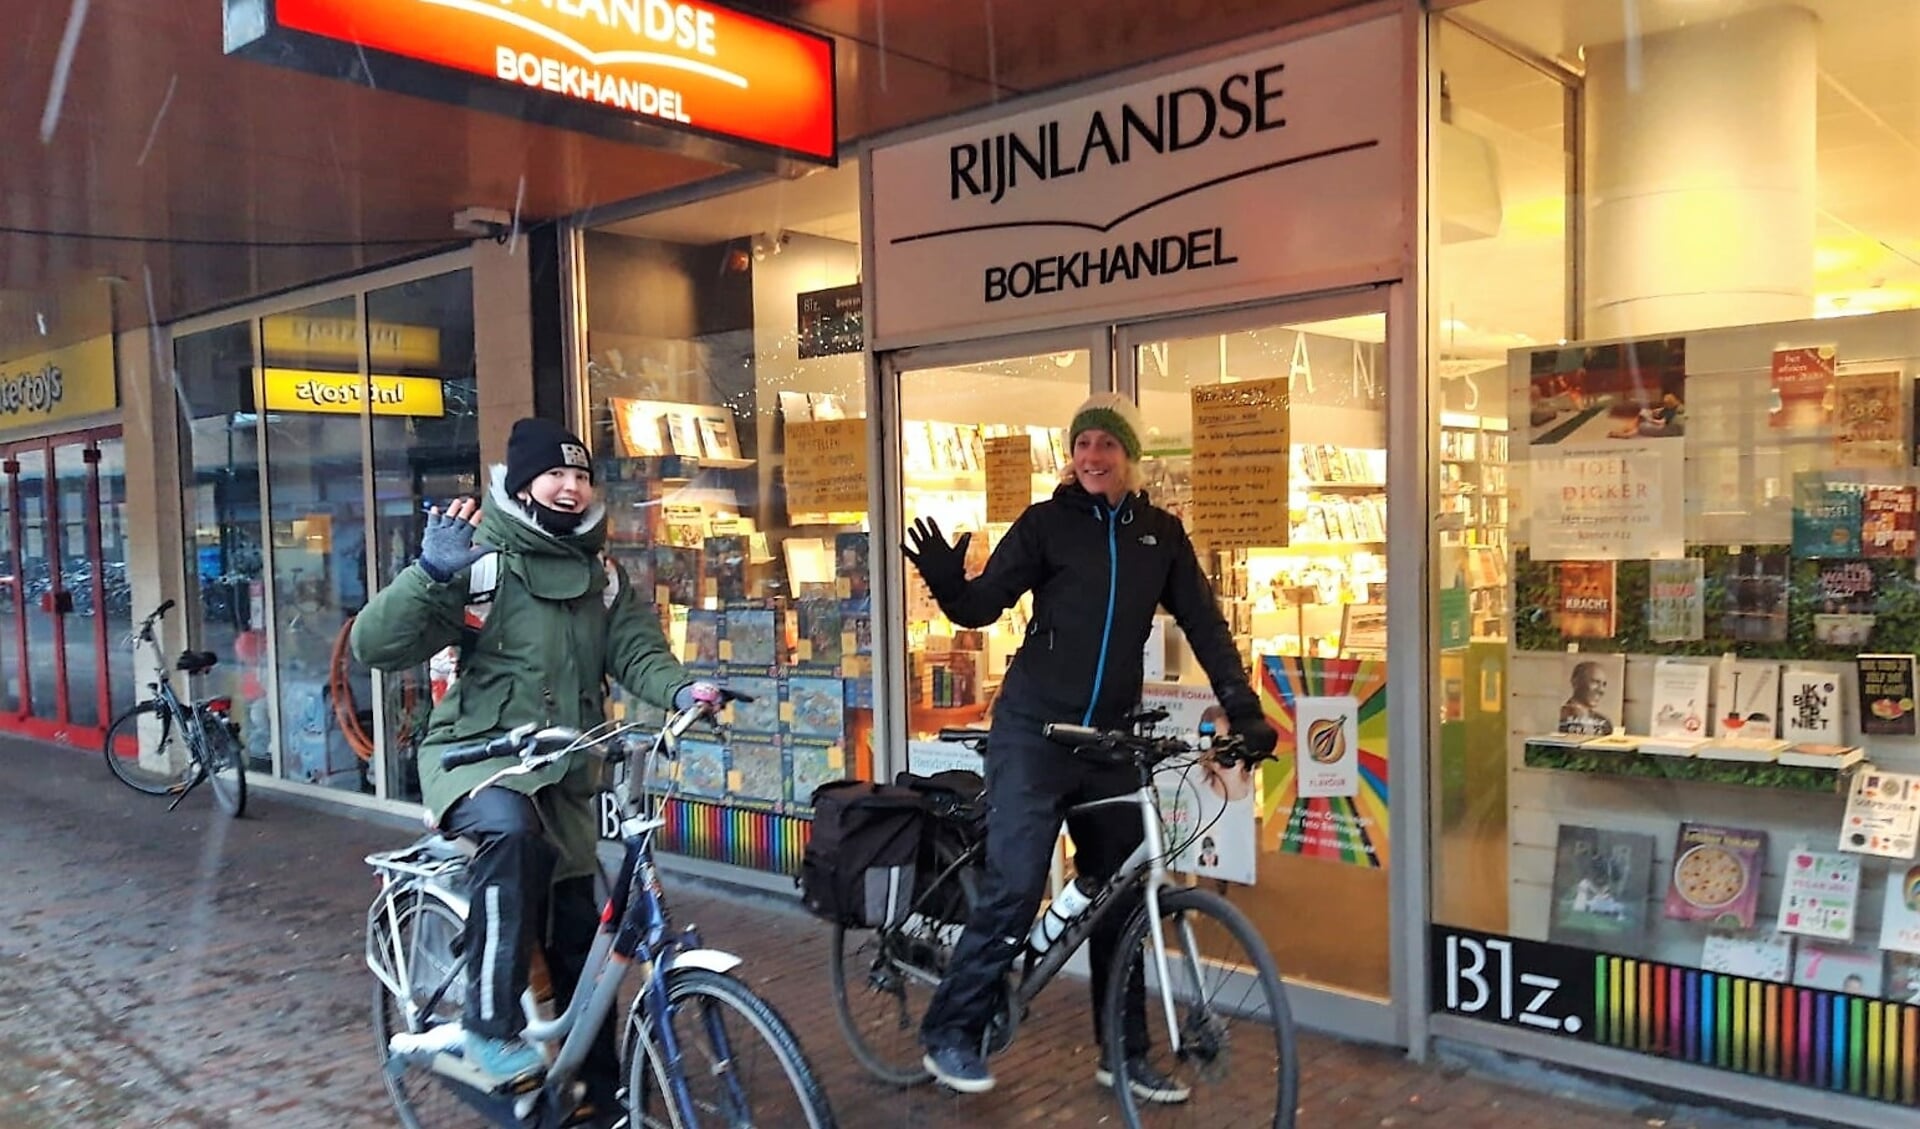 Nienke en Lizzy afgelopen zaterdag bij de start van een barre fietstocht door de sneeuw om boeken in Oegstgeest en omgeving te bezorgen. Bestellen kan via telefoon, mail of website: www.rijnlandseboekhandel.nl.